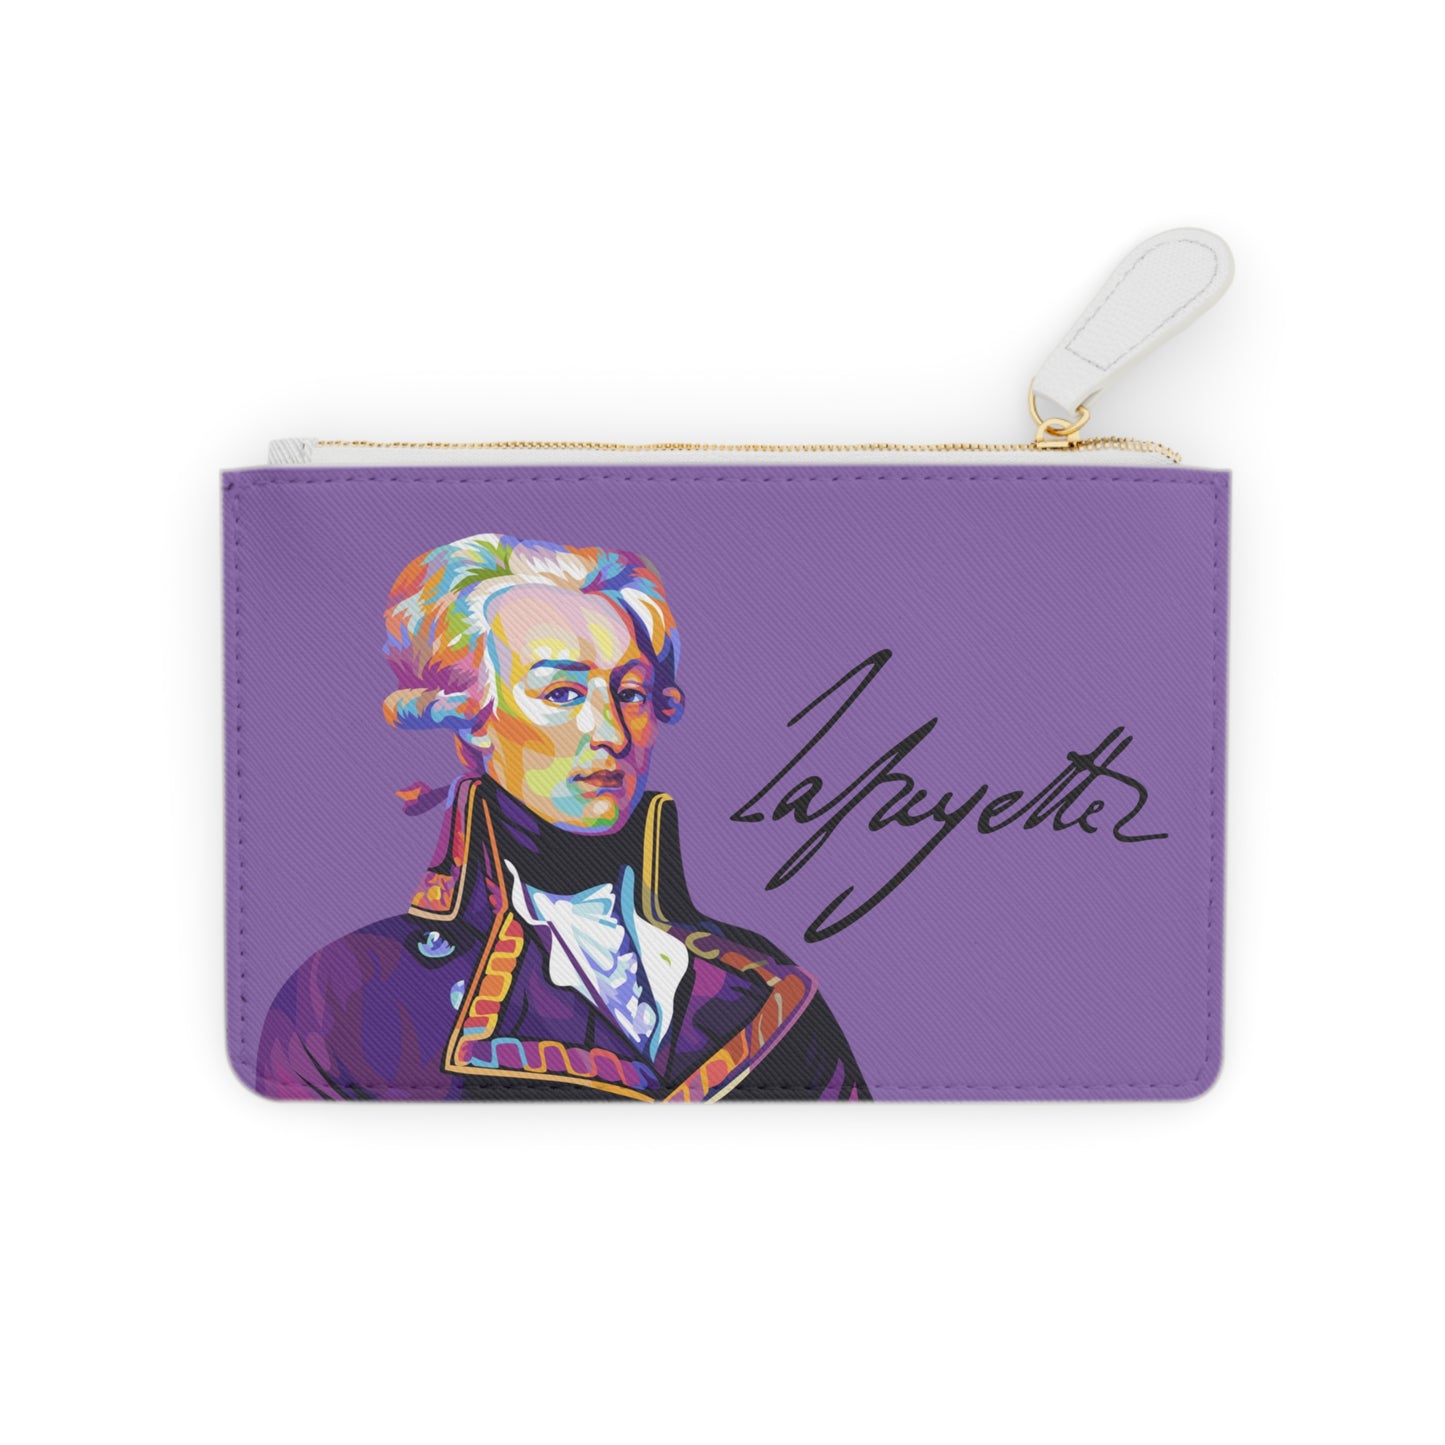 Lafayette Clutch Bag Purple with Marquis de Lafayette pop art portrait - Marquis de Lafayette Accessory, History, Christmas, Unique Gift